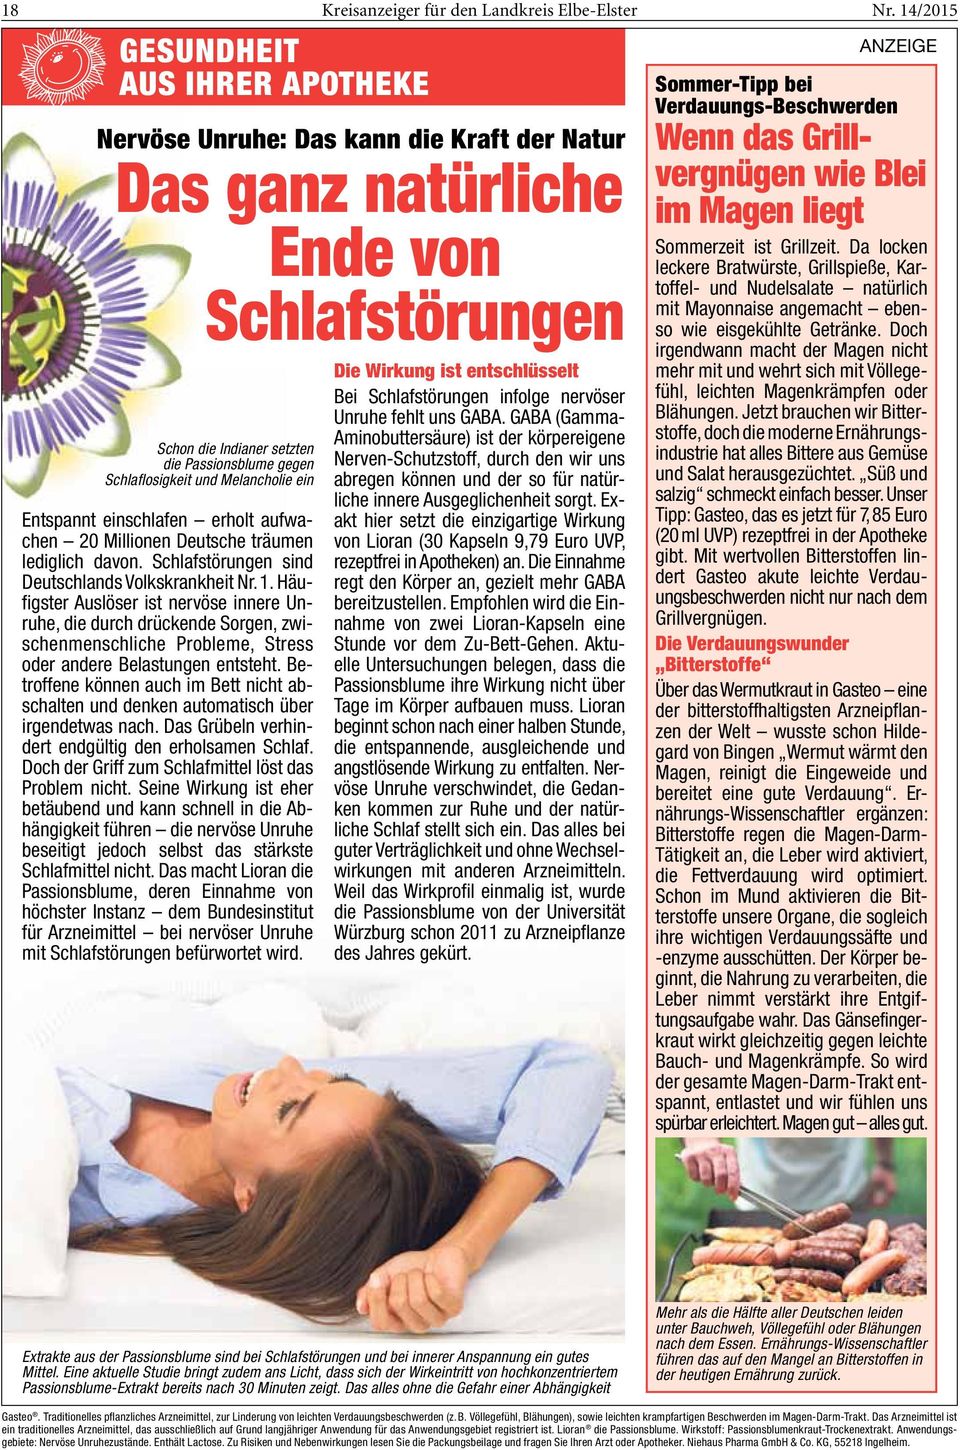 Melancholie ein Entspannt einschlafen erholt aufwachen 20 Mil lionen Deutsche träumen lediglich davon. Schlafstörungen sind Deutschlands Volkskrankheit Nr. 1.